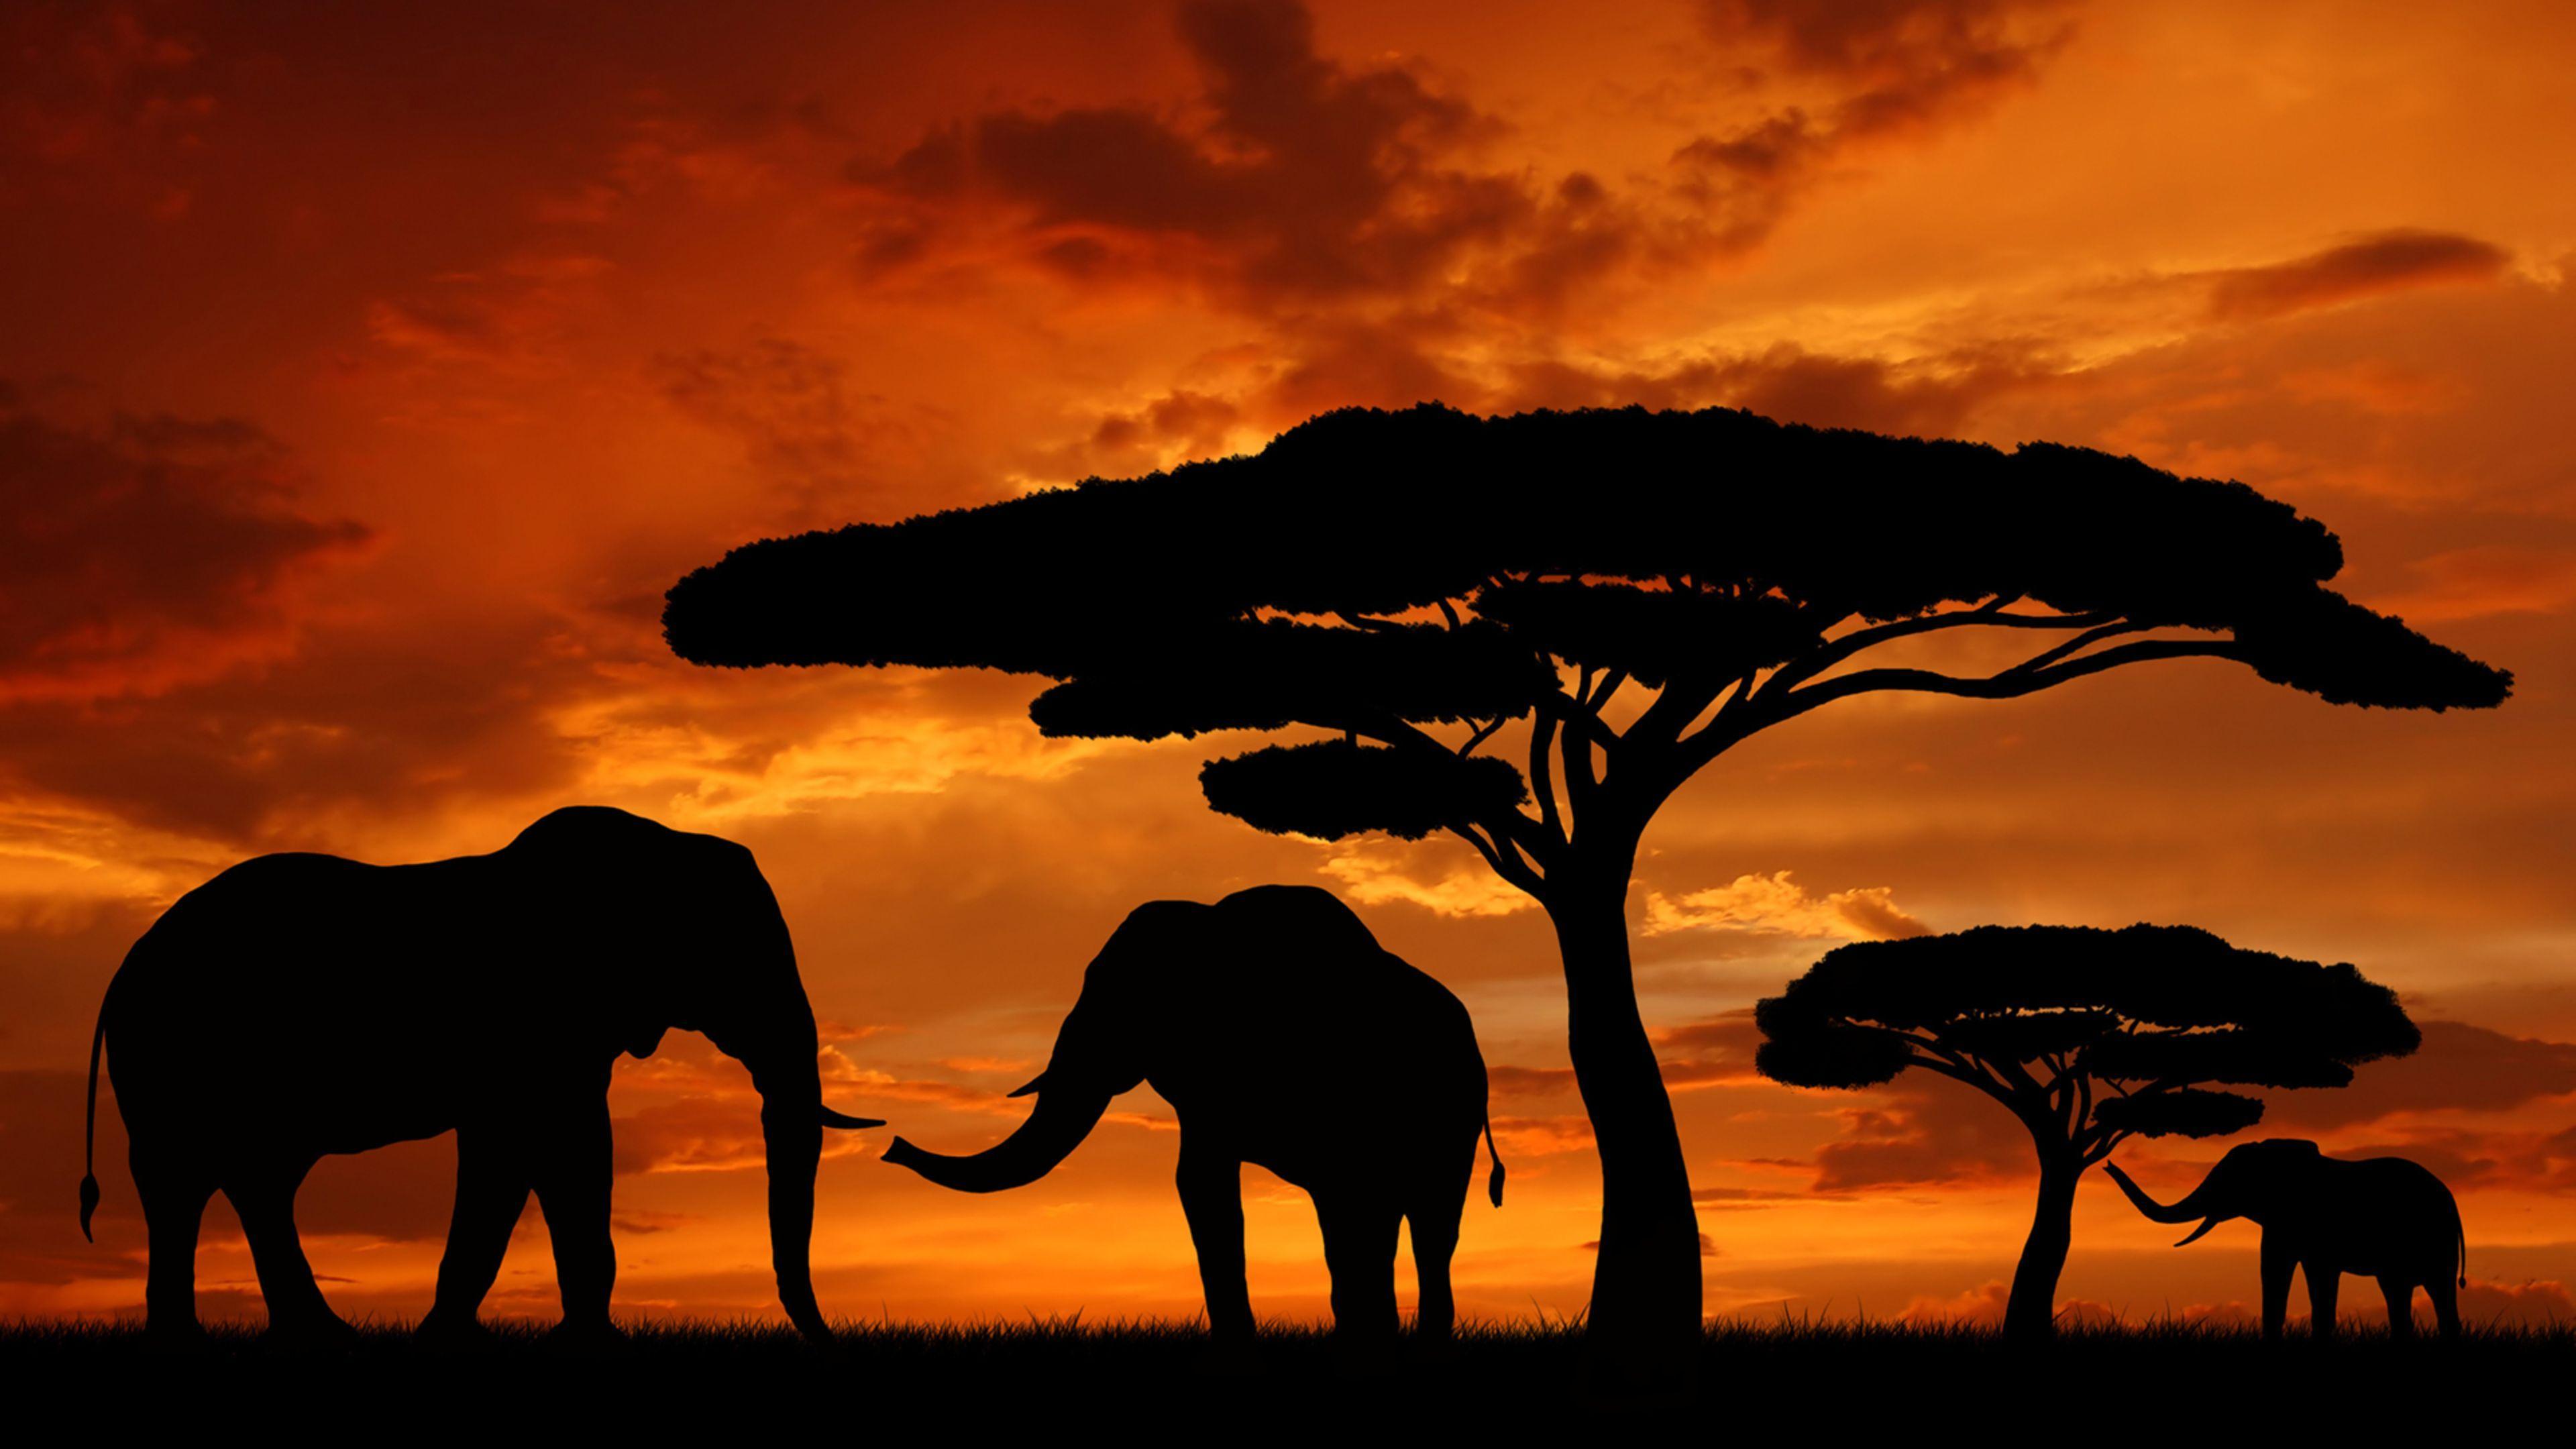 download image safari